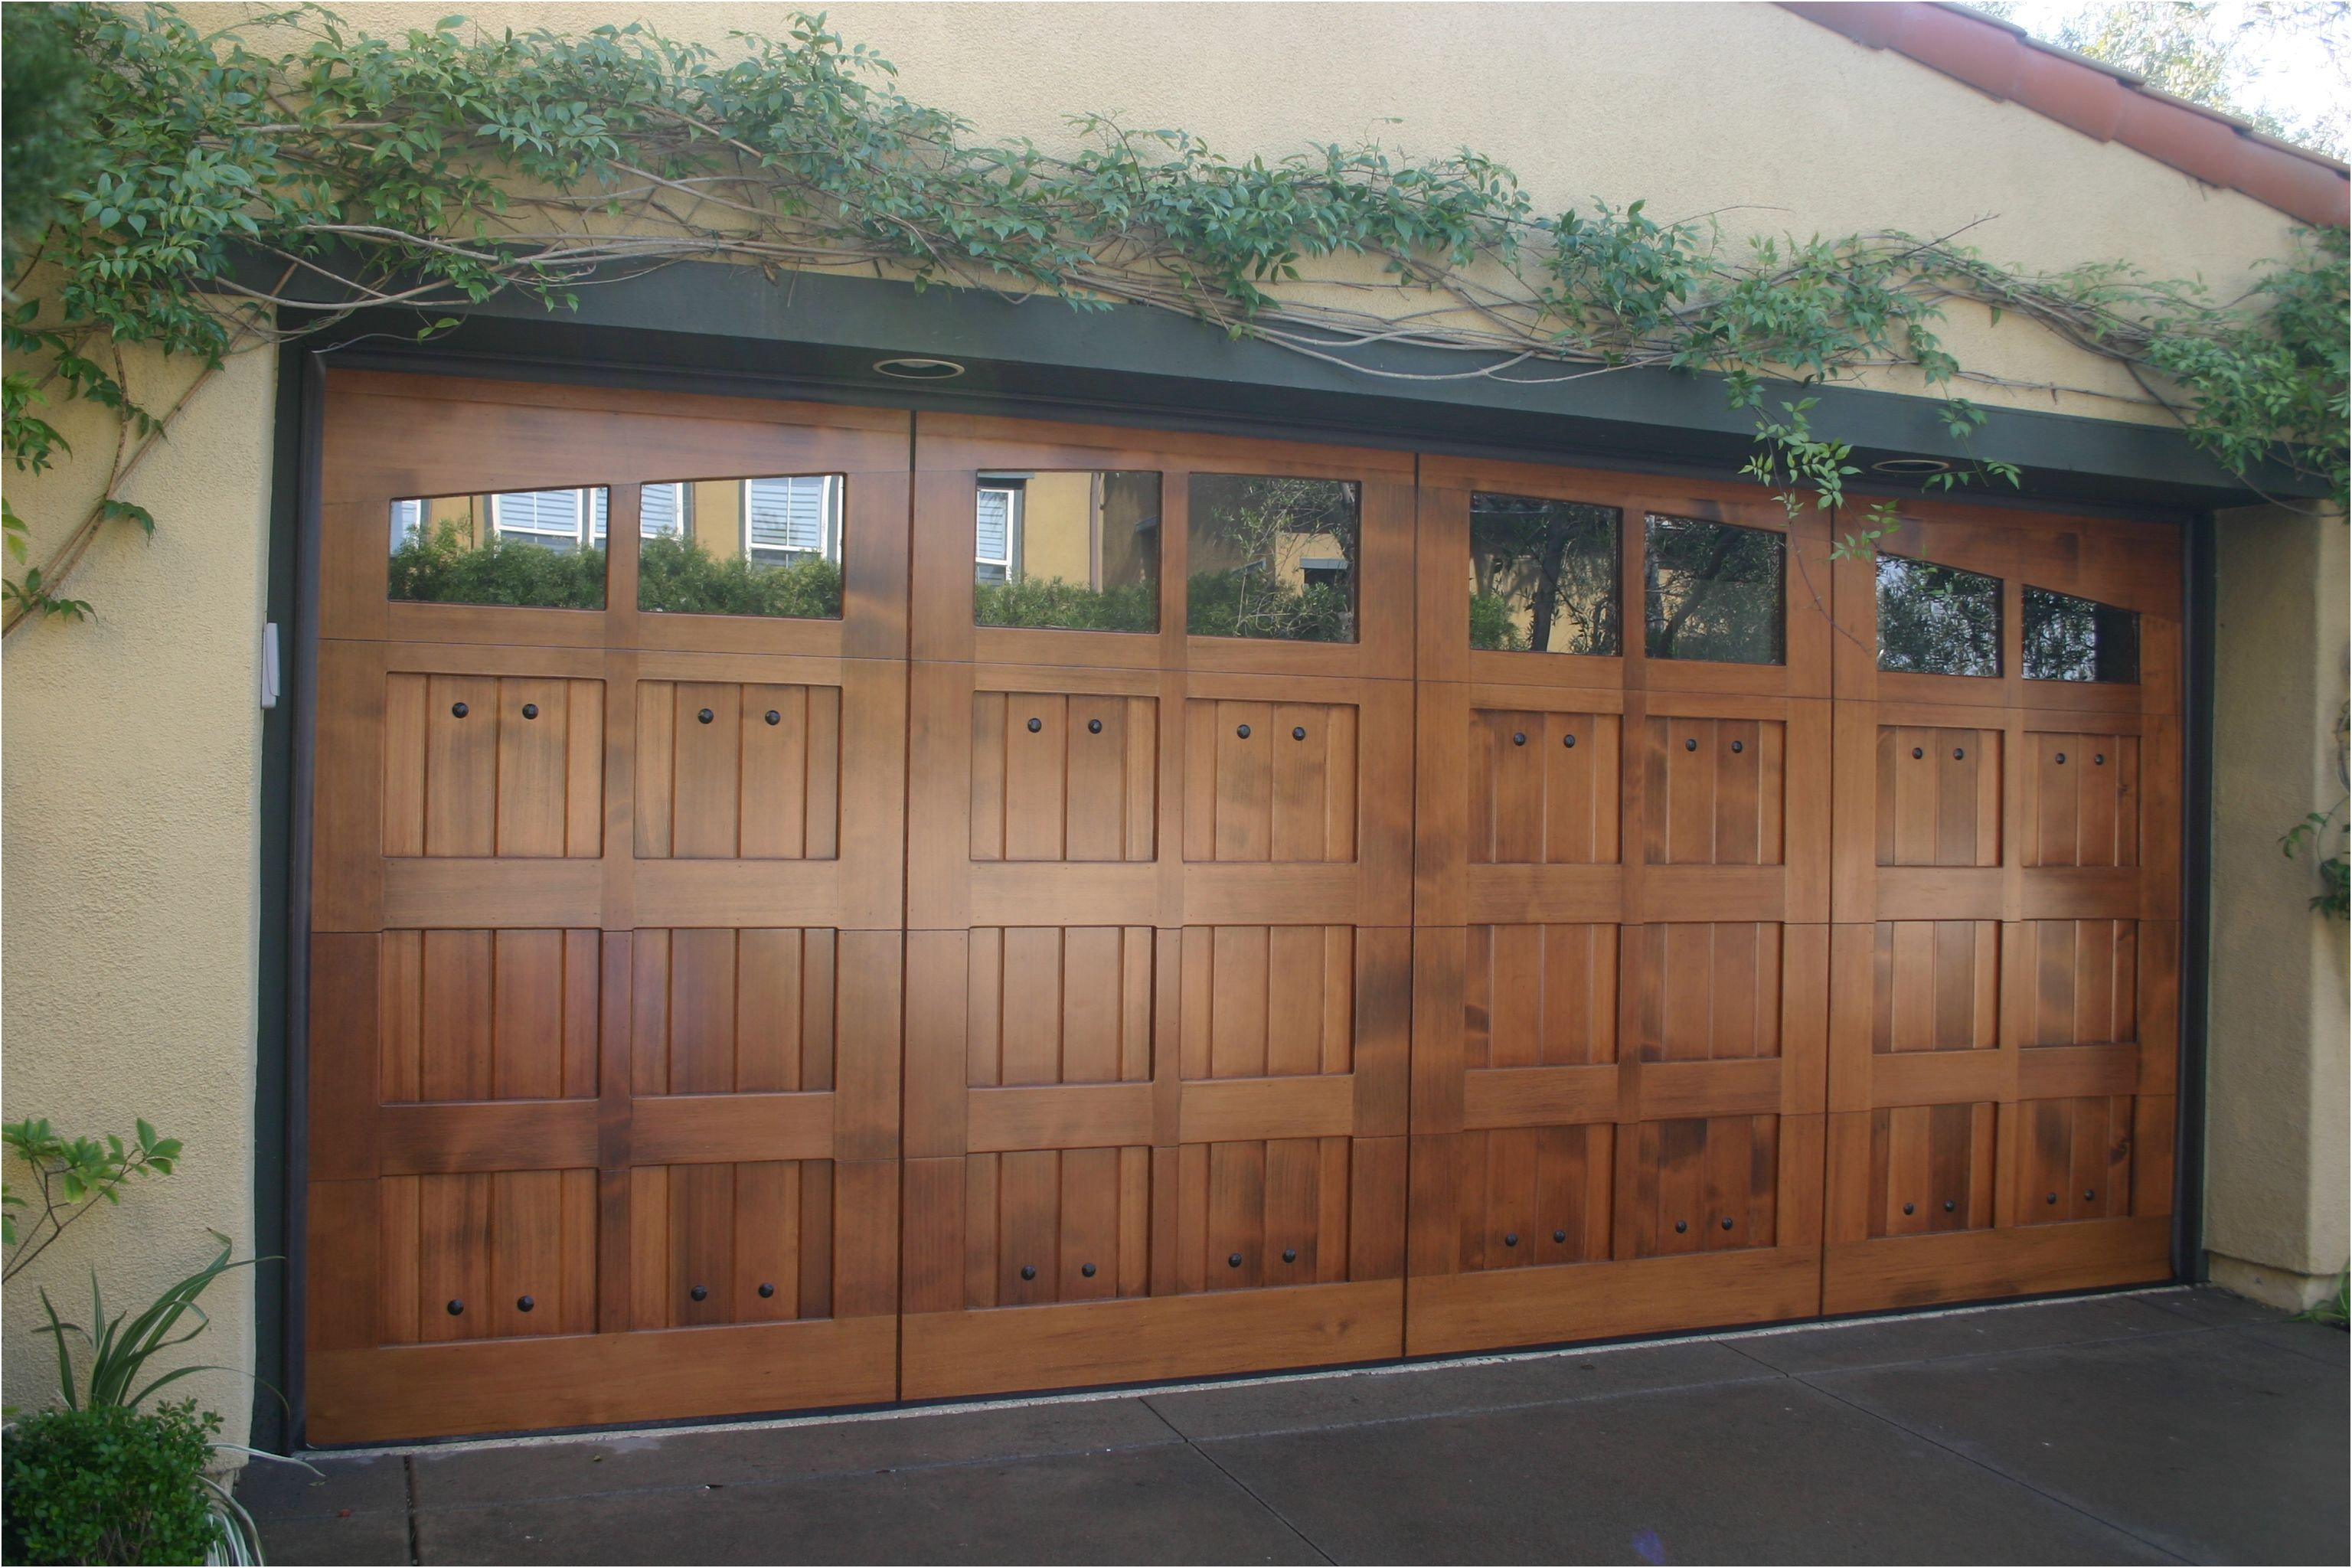 Best Of Steel Garage Doors that Look Like Wood